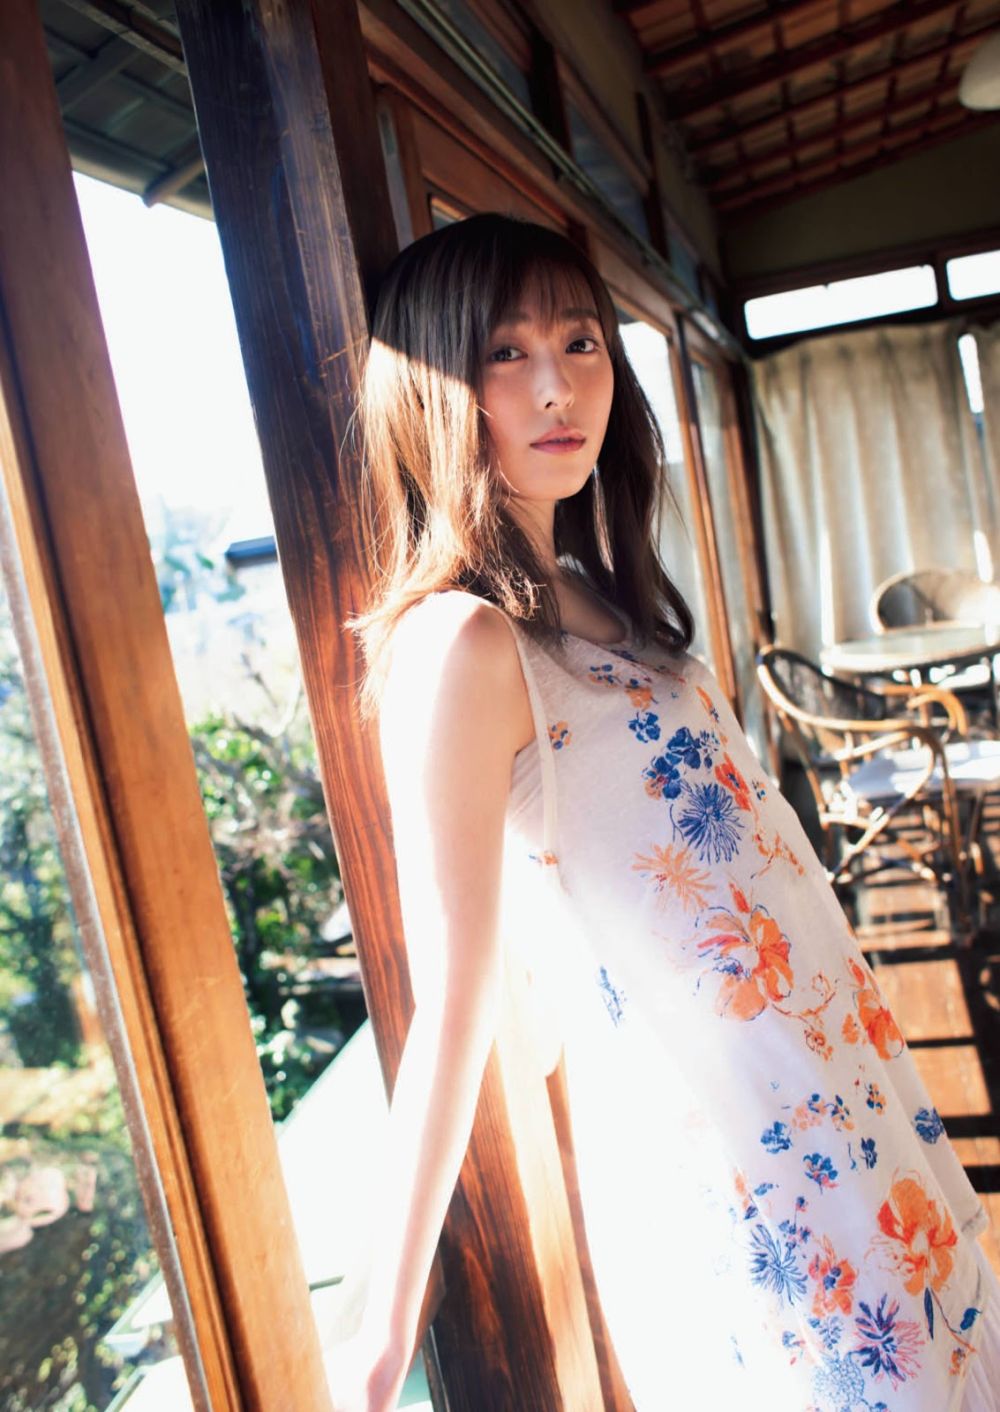 Haruka Fukuhara Sexy and Hottest Photos , Latest Pics